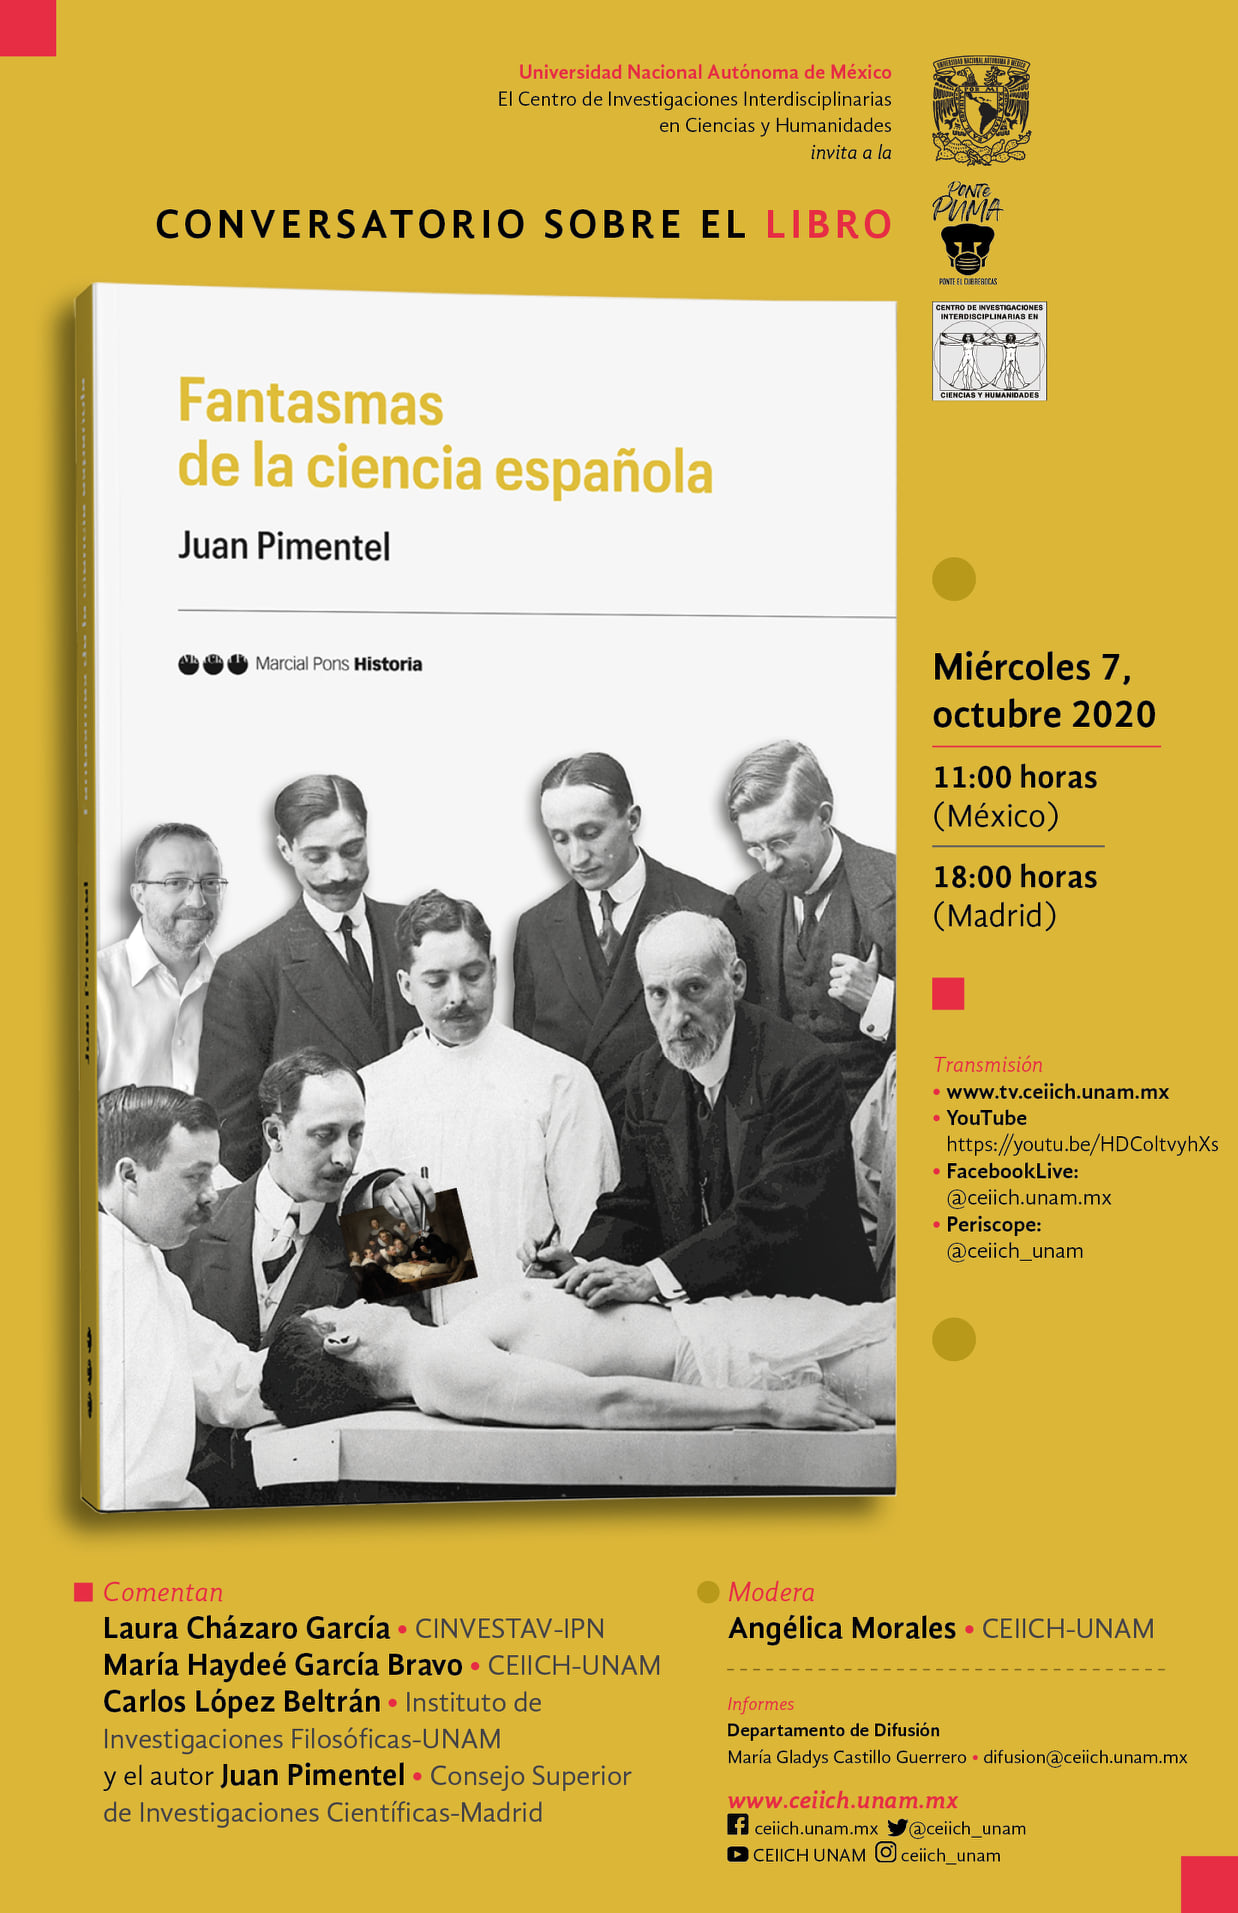 Conversatorio sobre el libro Fantasmas de la ciencia española de Juan Pimentel